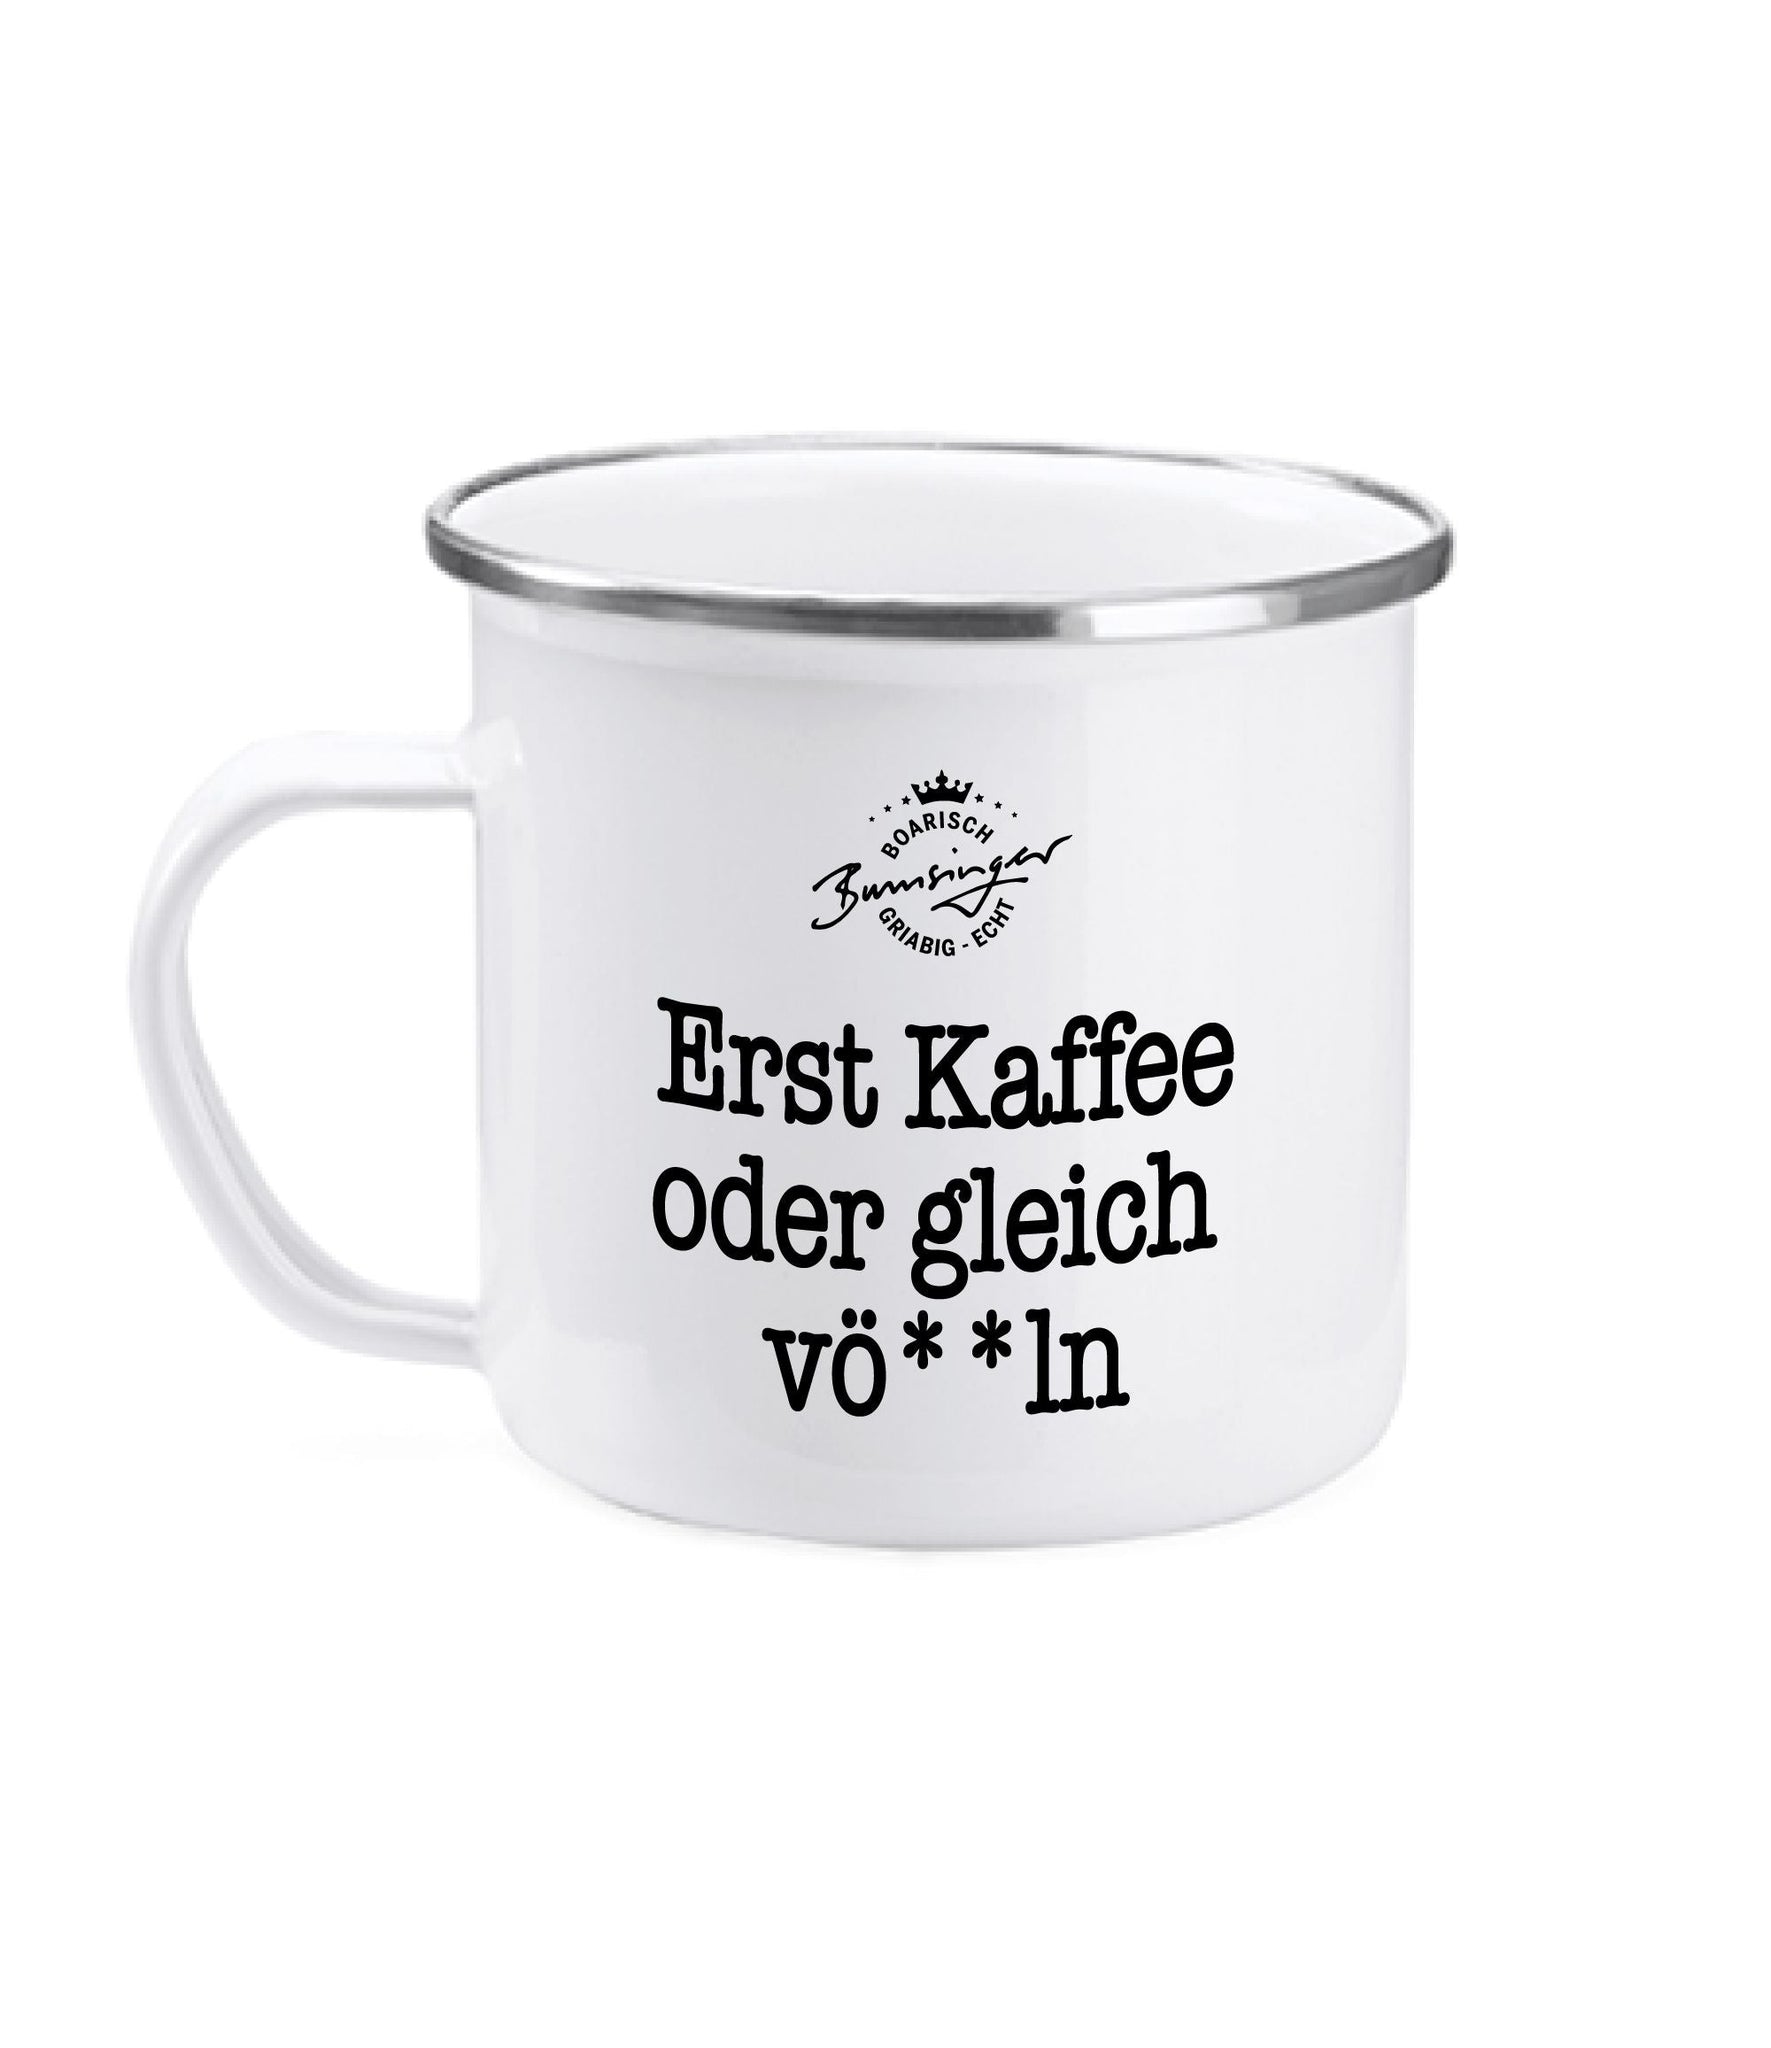 Bumsinger's Tasse Erst Kaffee?, Emaille, 380ml